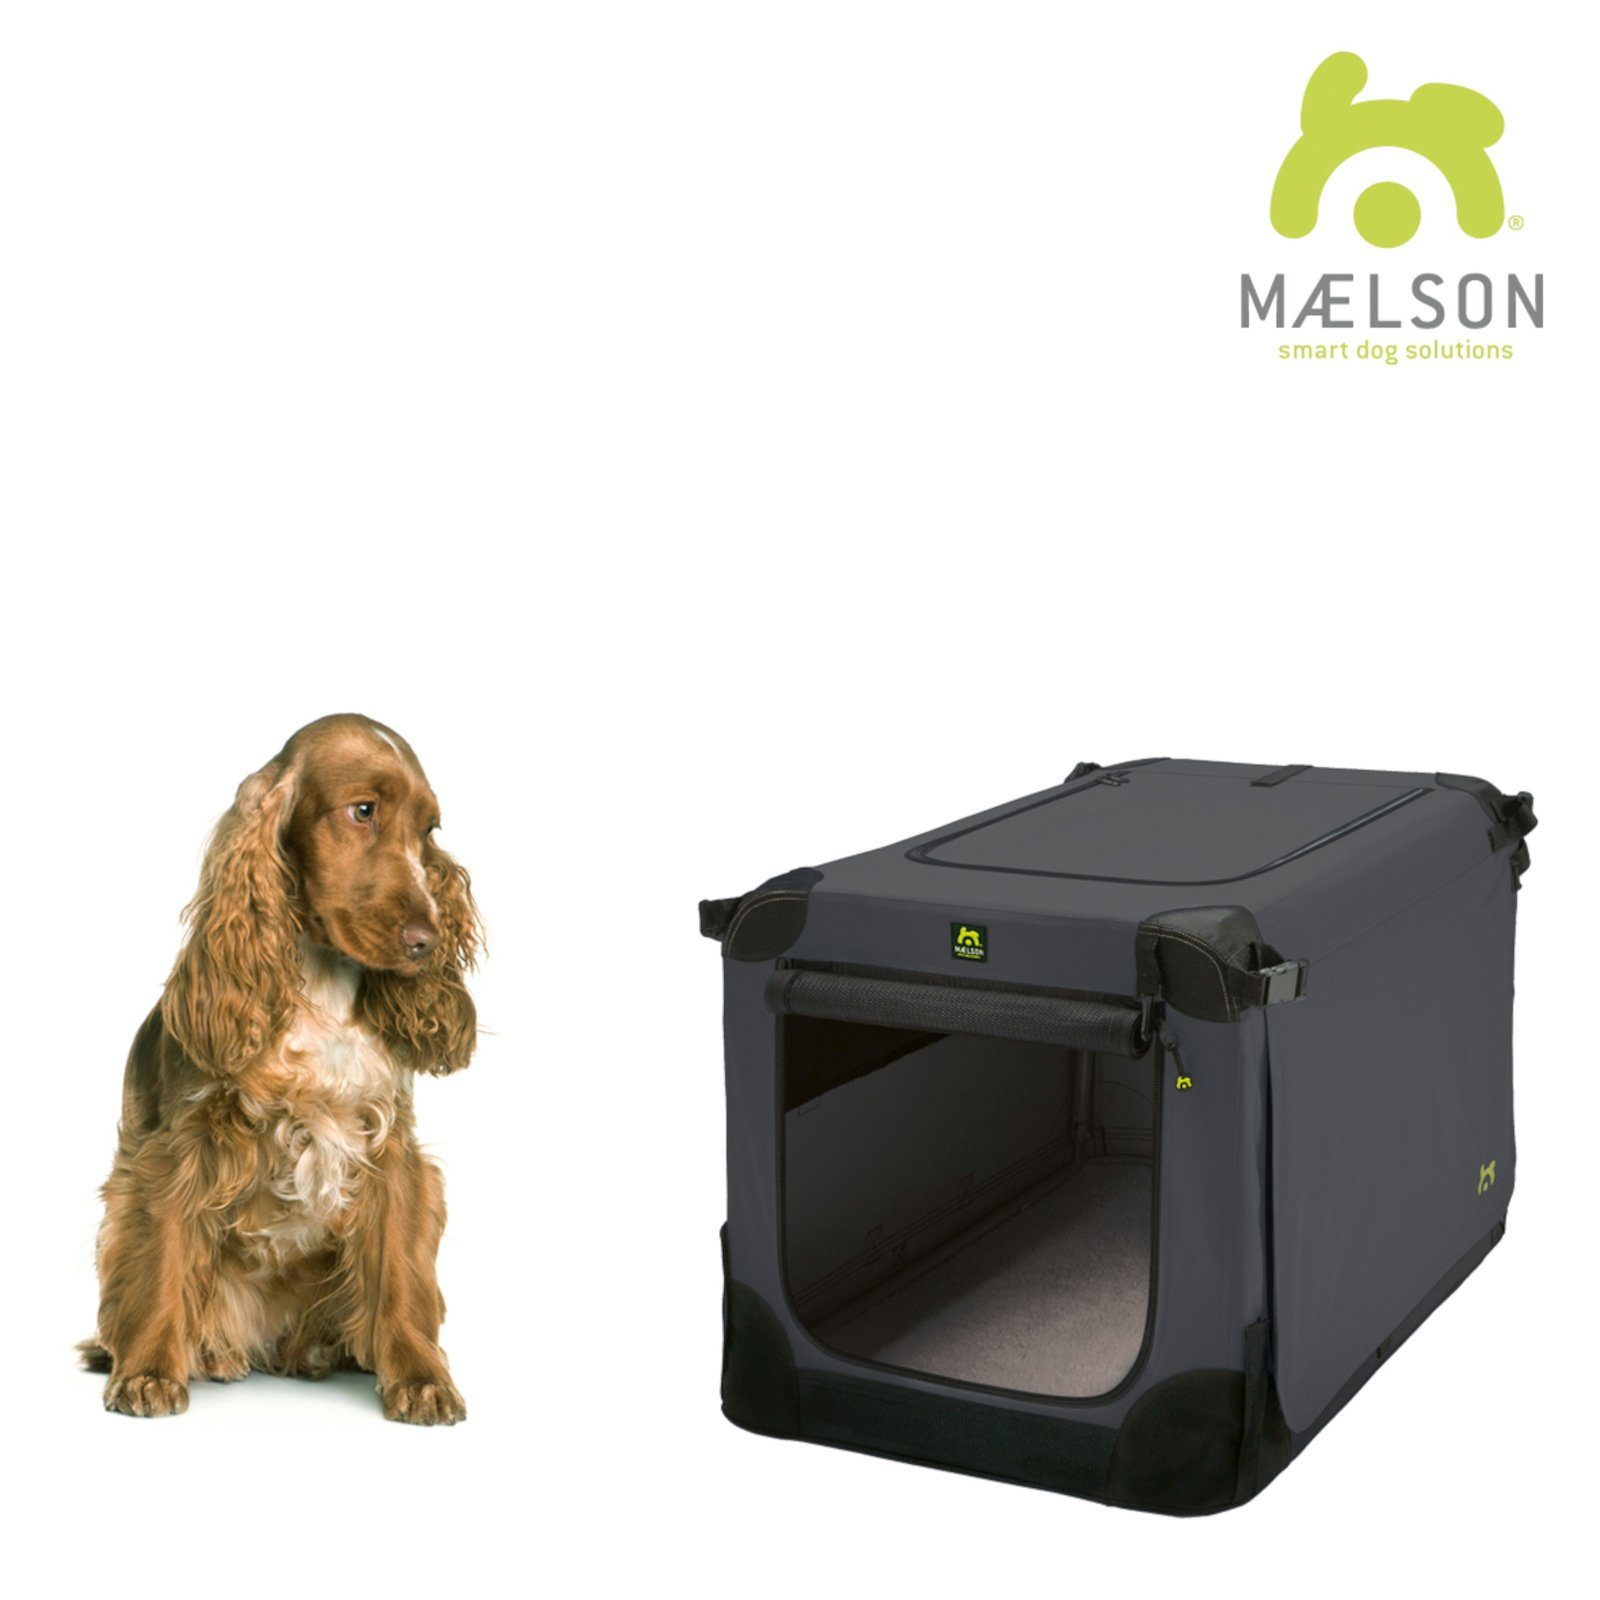 MAELSON Tiertransportbox Soft Kennel Transportbox, faltbar – anthrazit, für Hunde und Katzen geeignet